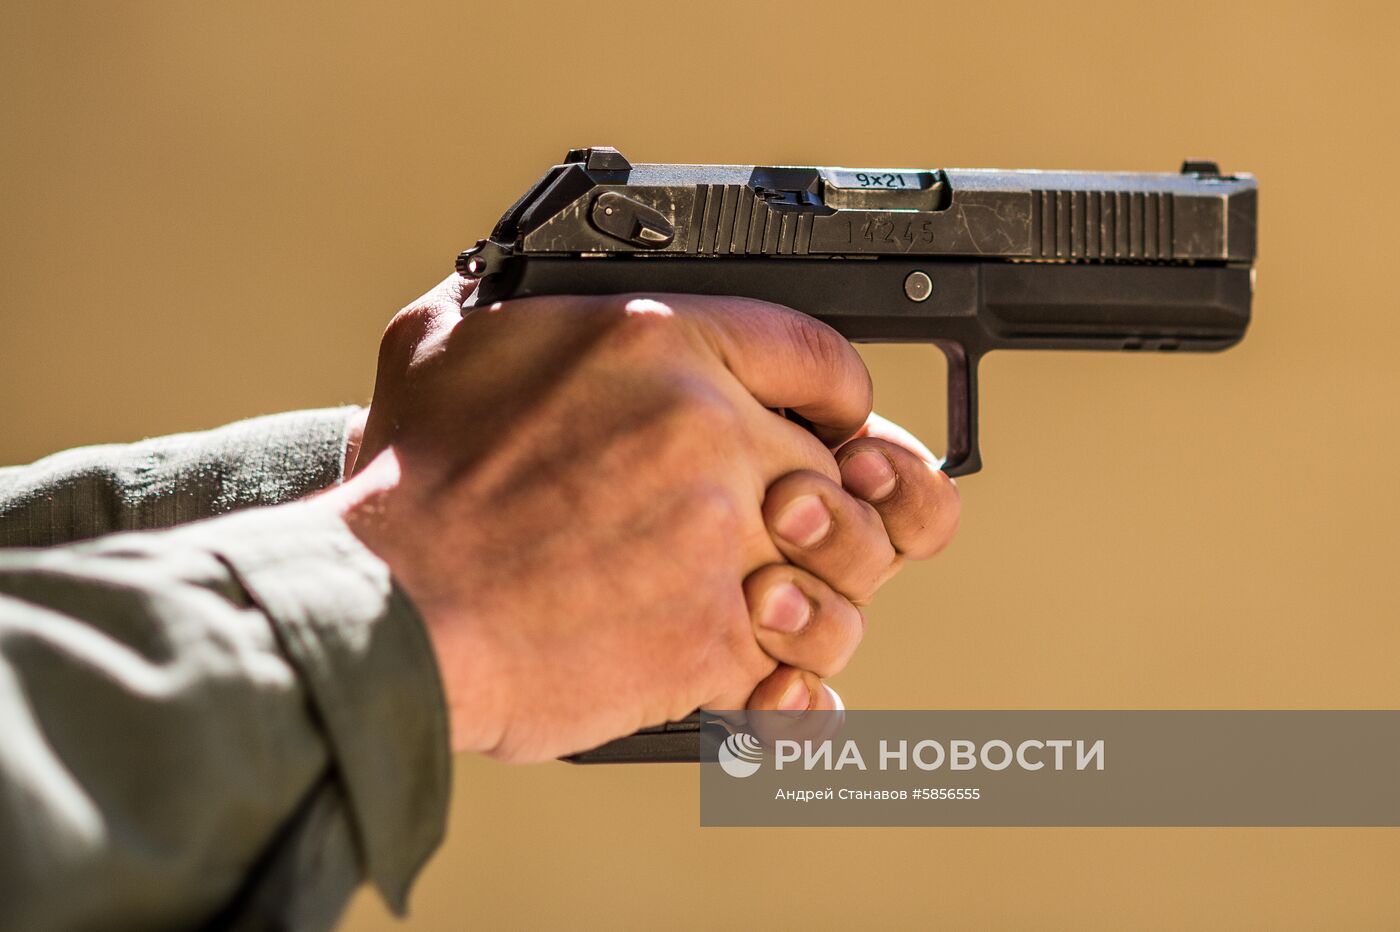 Пистолет "Удав" допущен к серийному производству